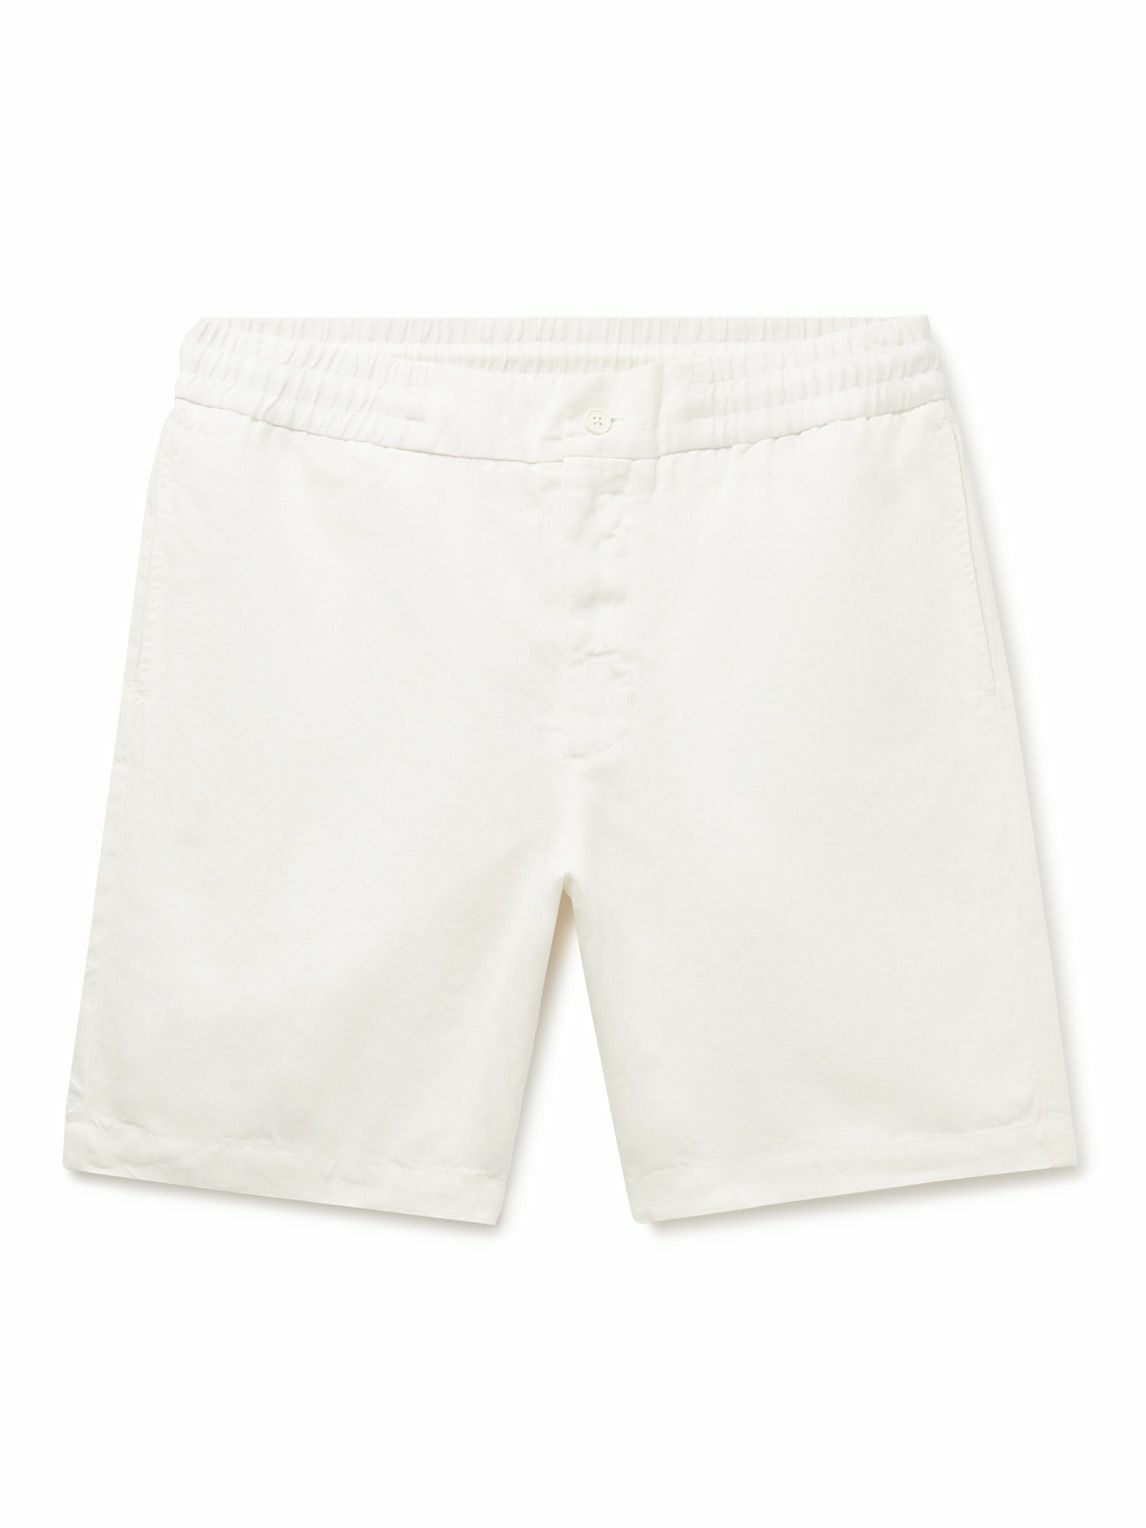 Orlebar Brown - Cornell Slim-Fit Linen Shorts - Neutrals Orlebar Brown